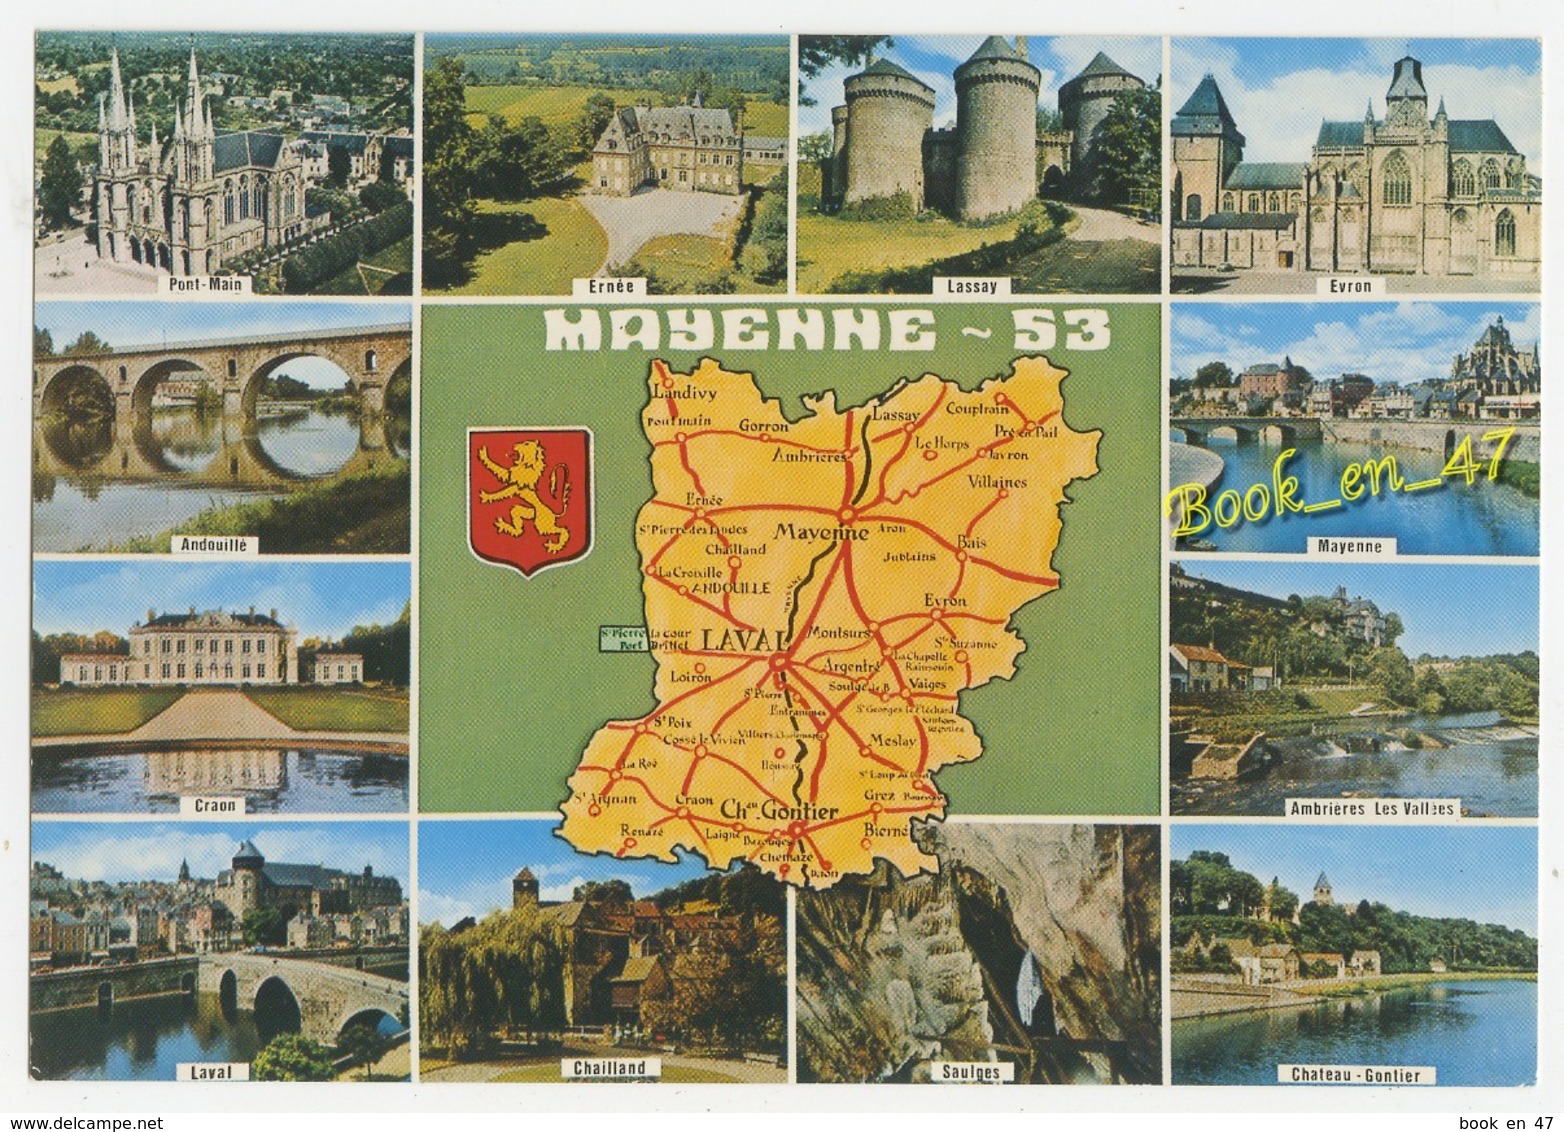 {79996} 53 Mayenne , Carte Et Multivues ; Pont Main , Ernée , Andouillé , Saulges , Laval , Craon , Evron , Chailland - Cartes Géographiques